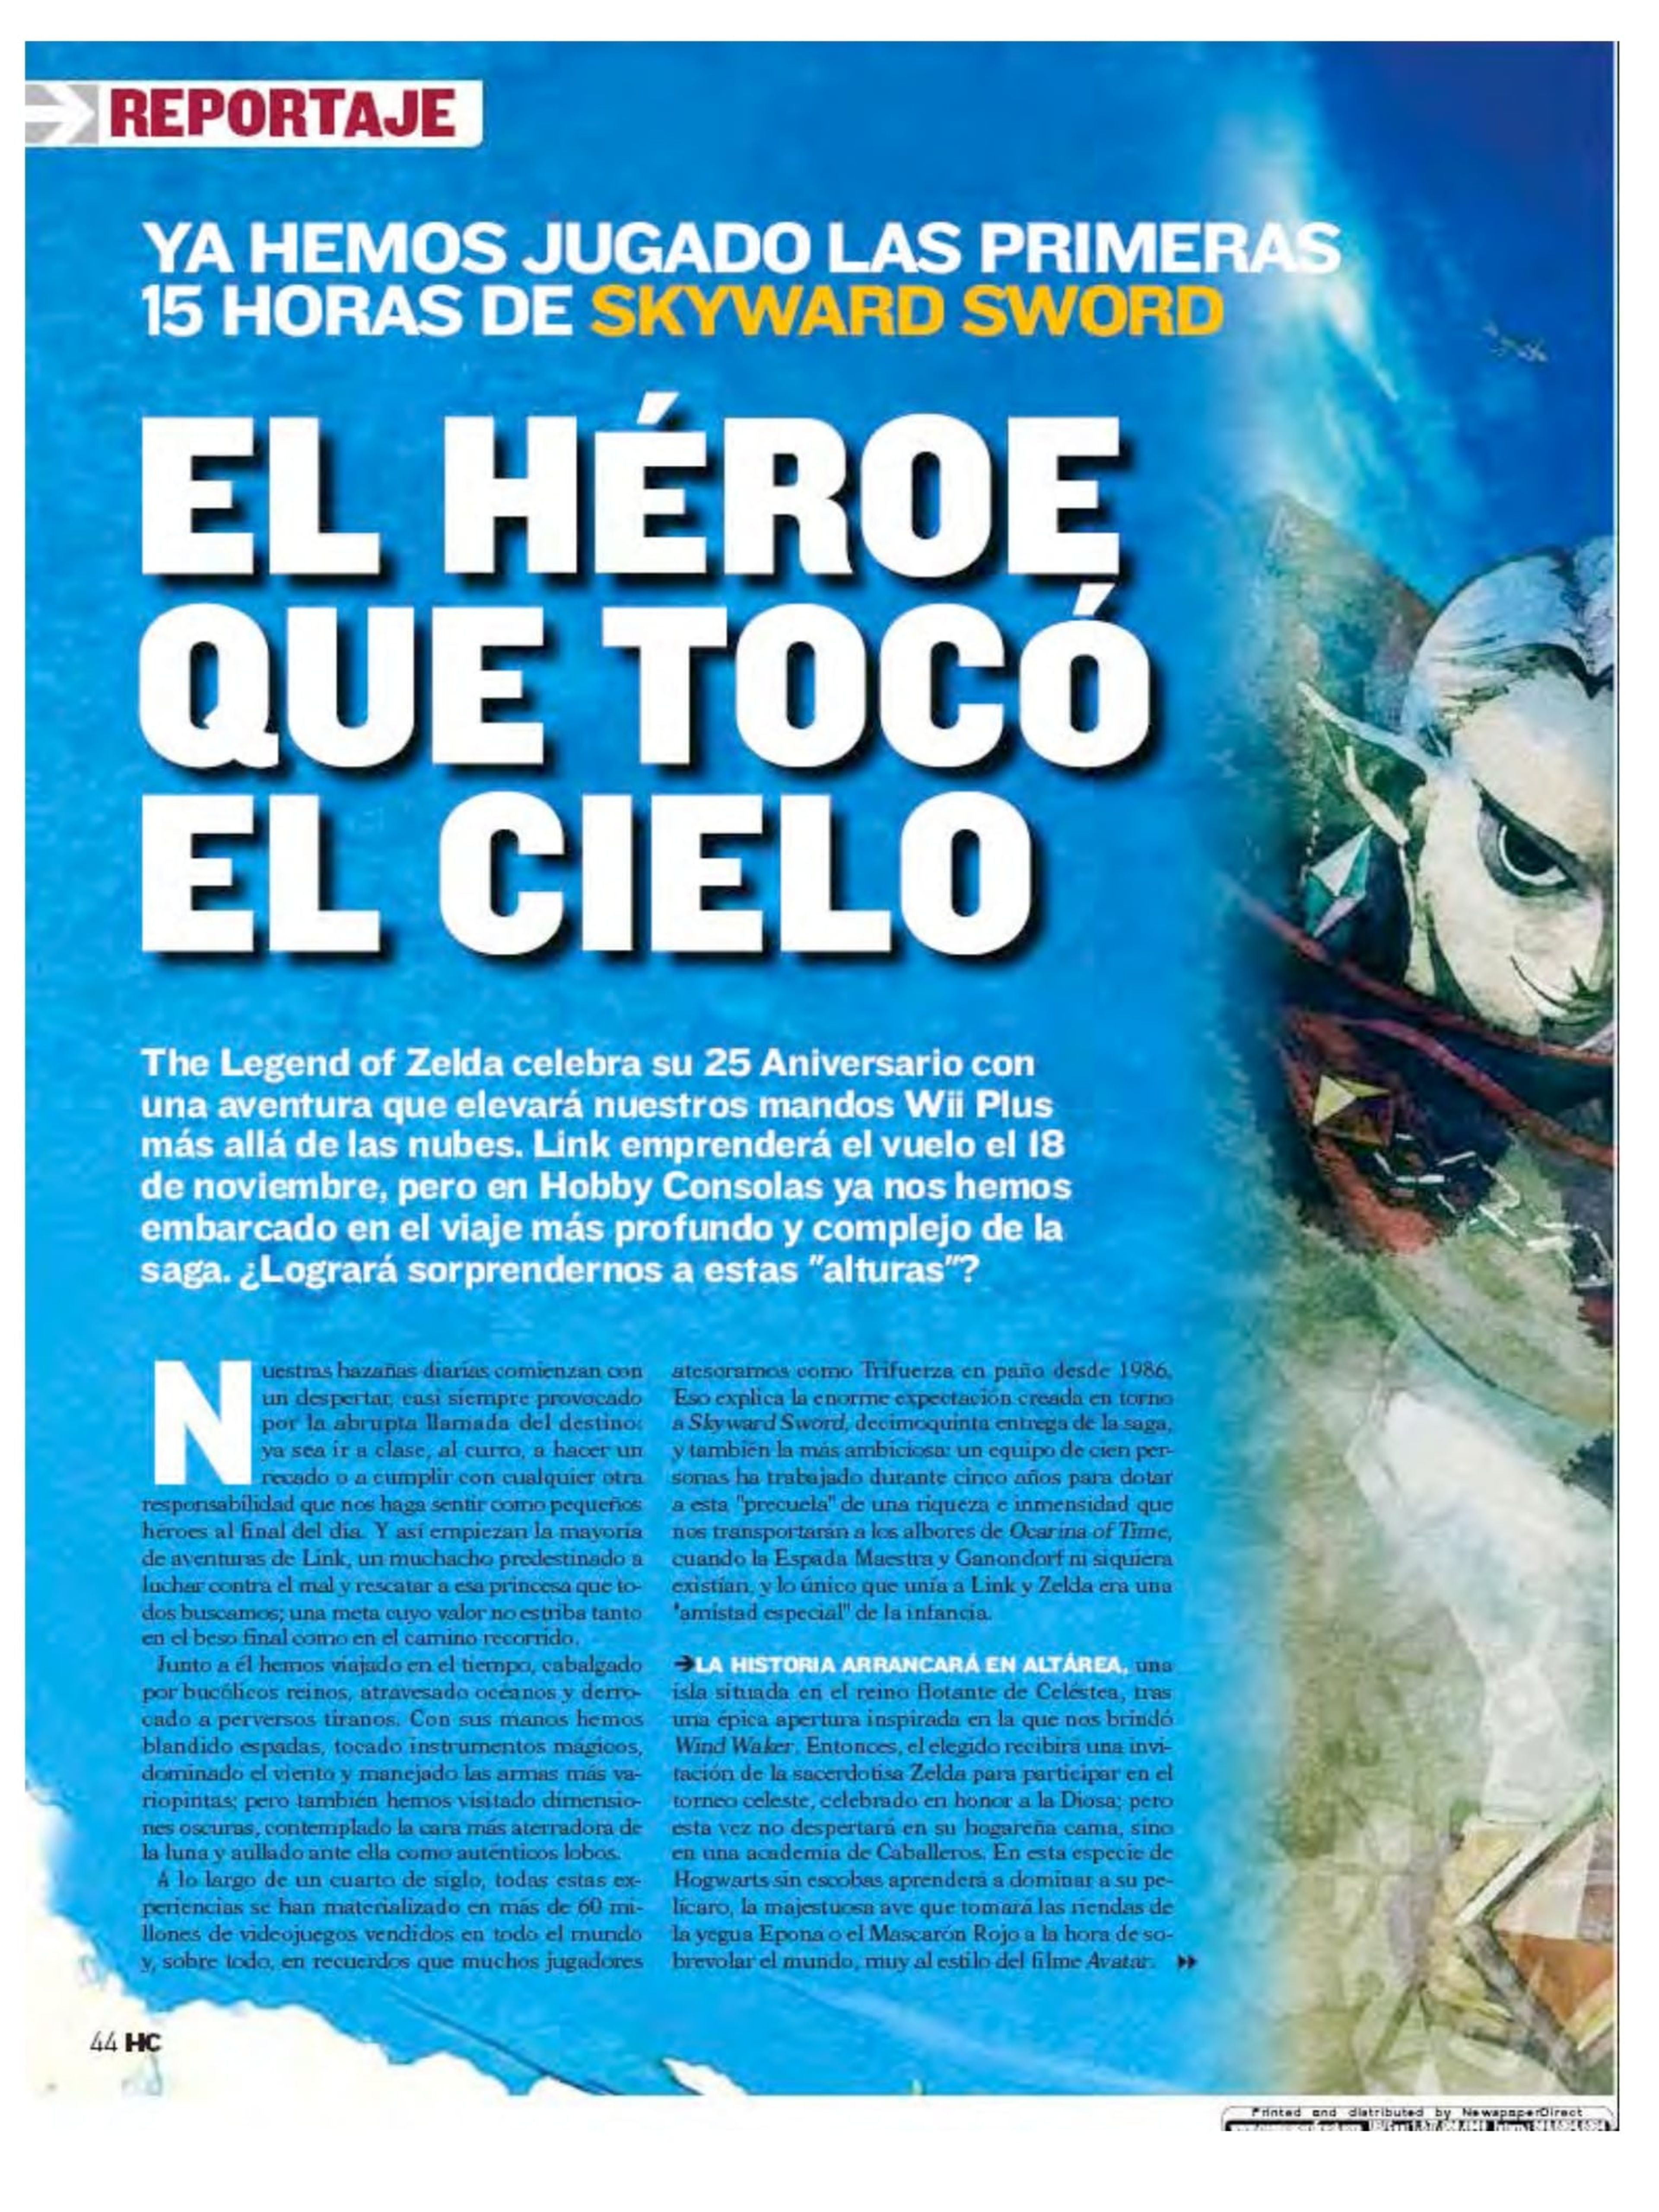 The Legend of Zelda: Enciclopedia llegará a España el 5 de abril -  Meristation